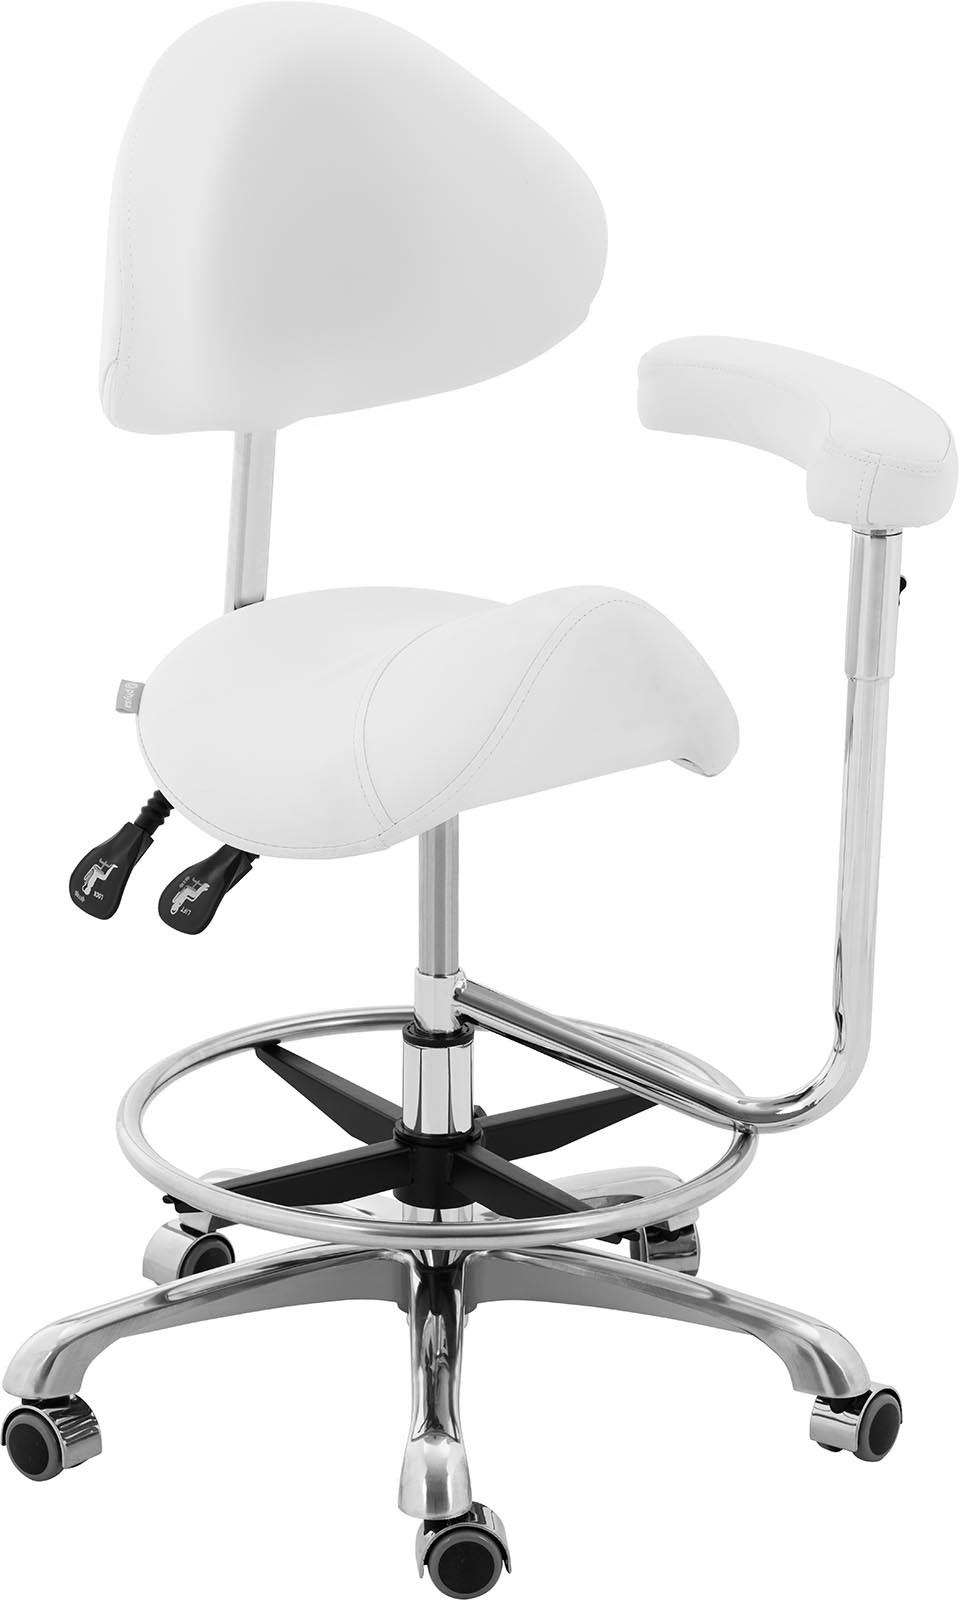 physa Krzesło siodłowe PHYSA WUPPERTAL WHITE białe oparcie i siedzisko z regulacją wysokości